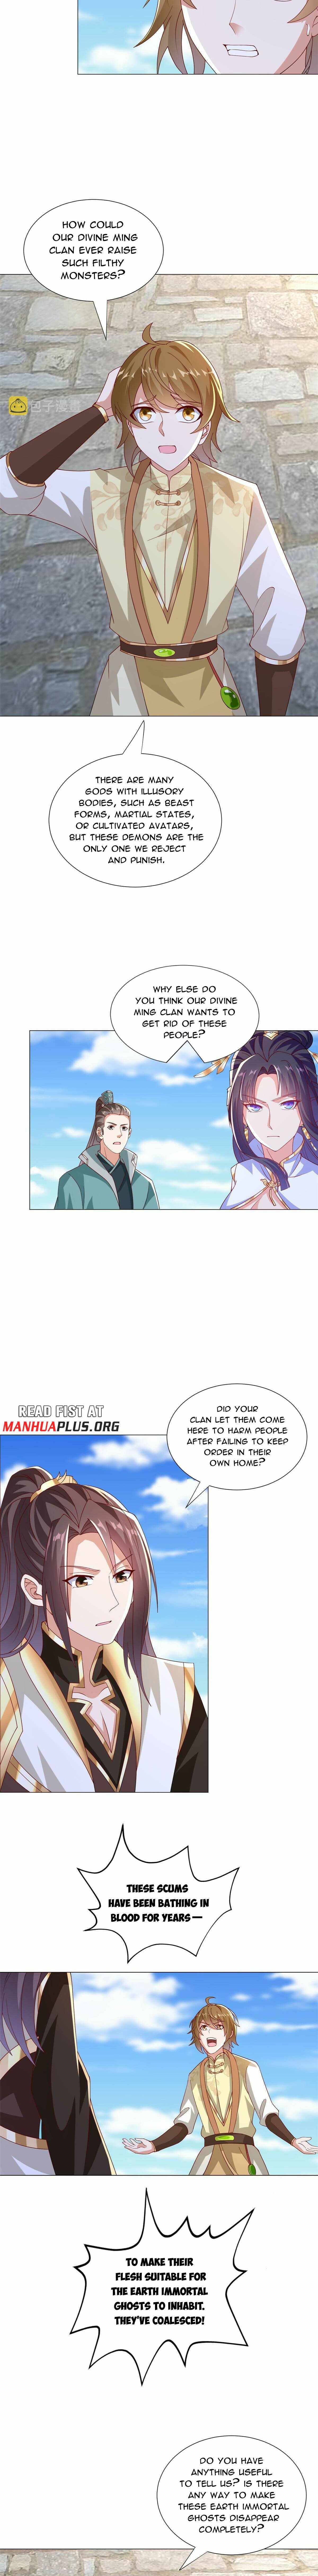 read Dragon Master Chapter 295 Manga Online Free at Mangabuddy, MangaNato,Manhwatop | MangaSo.com